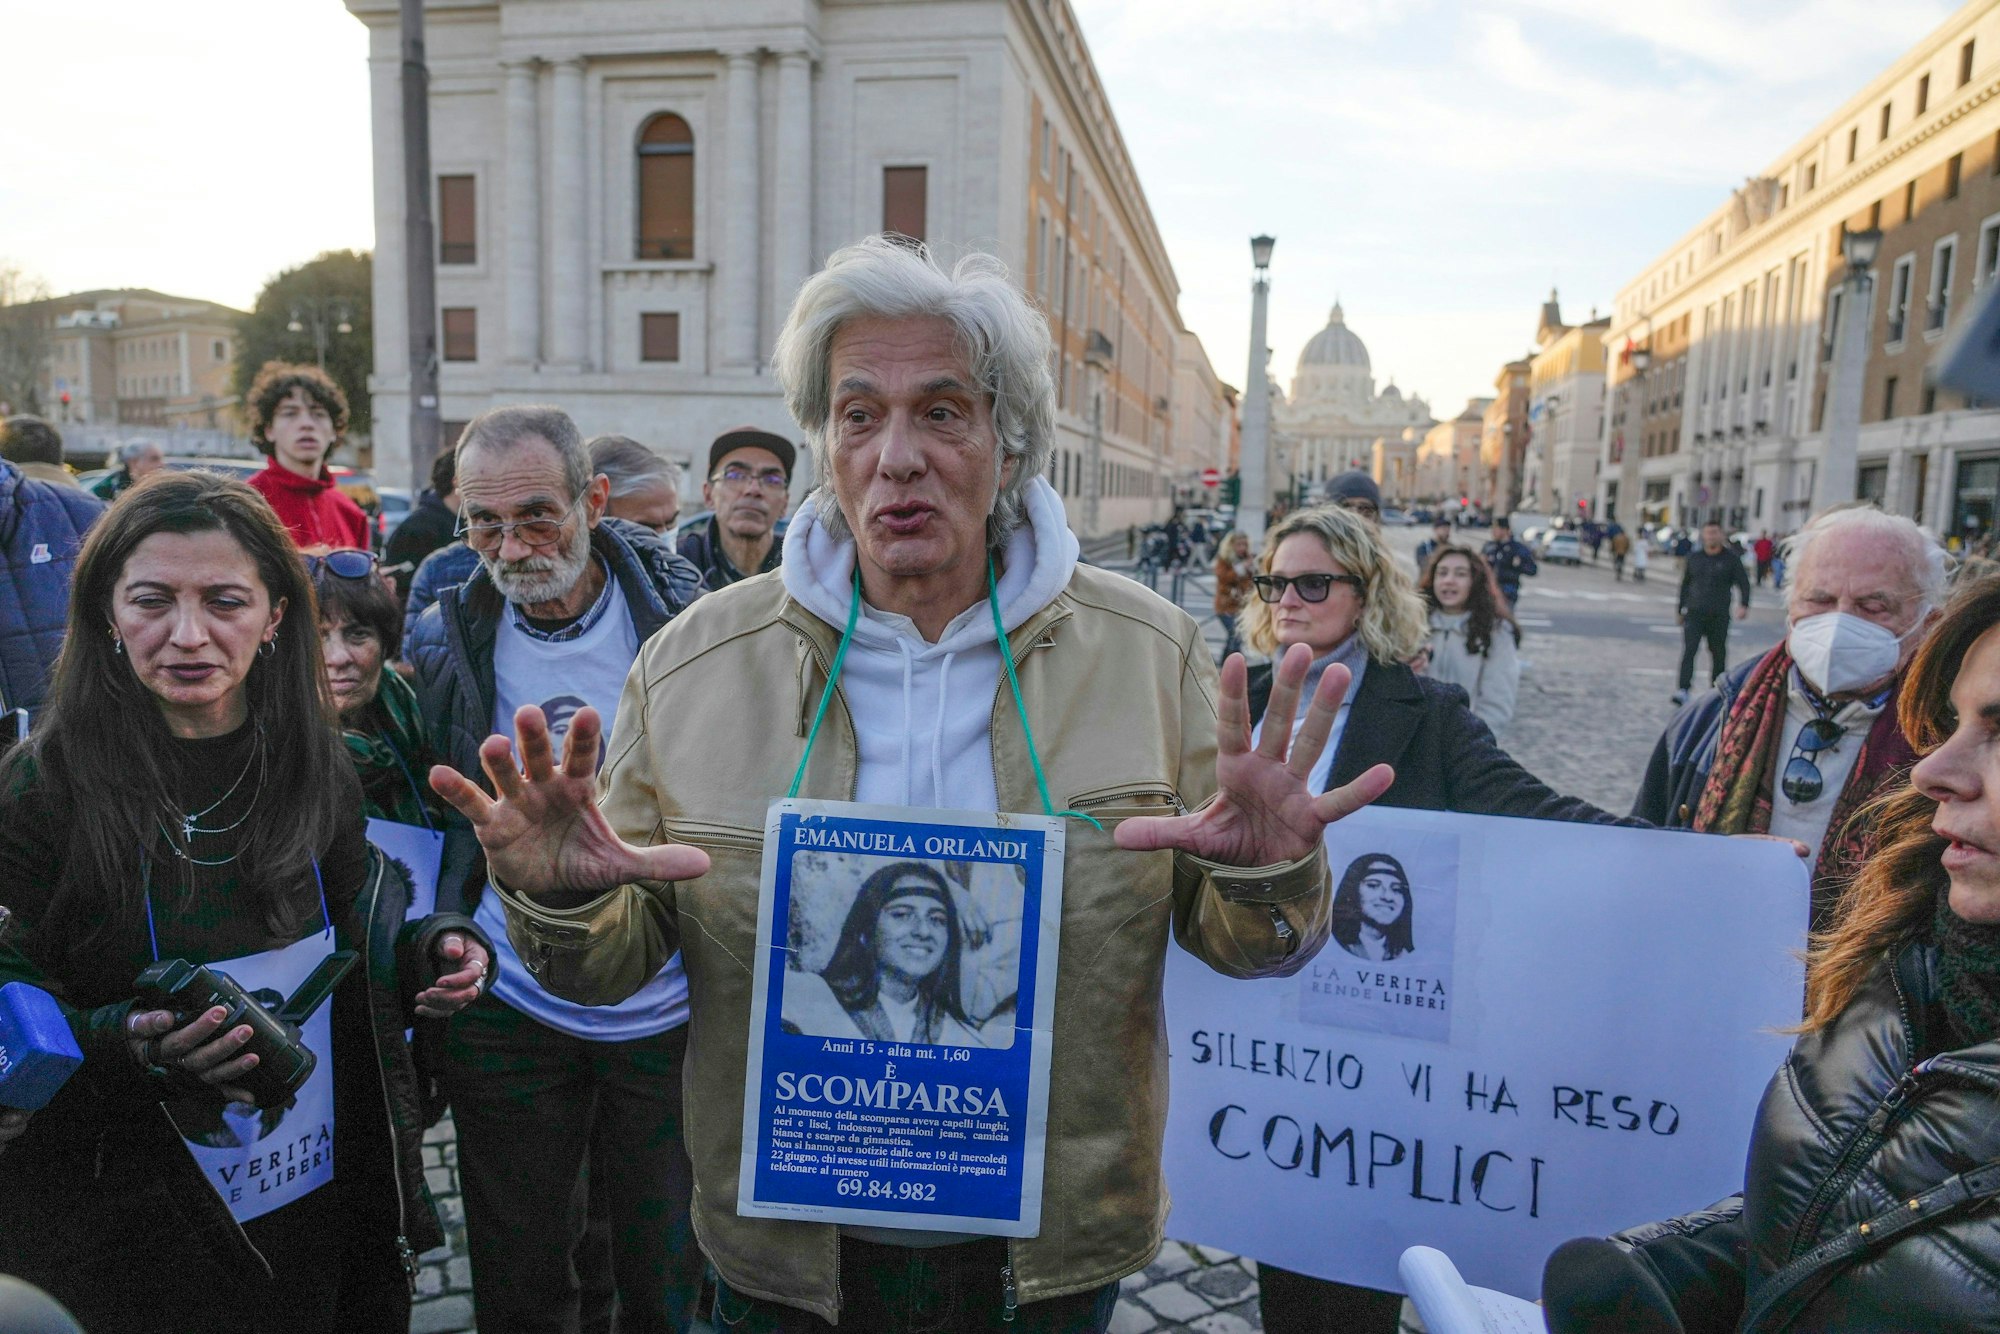 Emanuelas Bruder Pietro Orlandi sucht im Vatikan nach seiner verschwundenen Schwester. Um den Hals hängt das Fahndungsplakat mit Emanuela Orlandis Foto. Um ihn herum stehen weitere Demonstrierende, die Aufklärung fordern. Im Hintergrund sieht man den Petersdom.